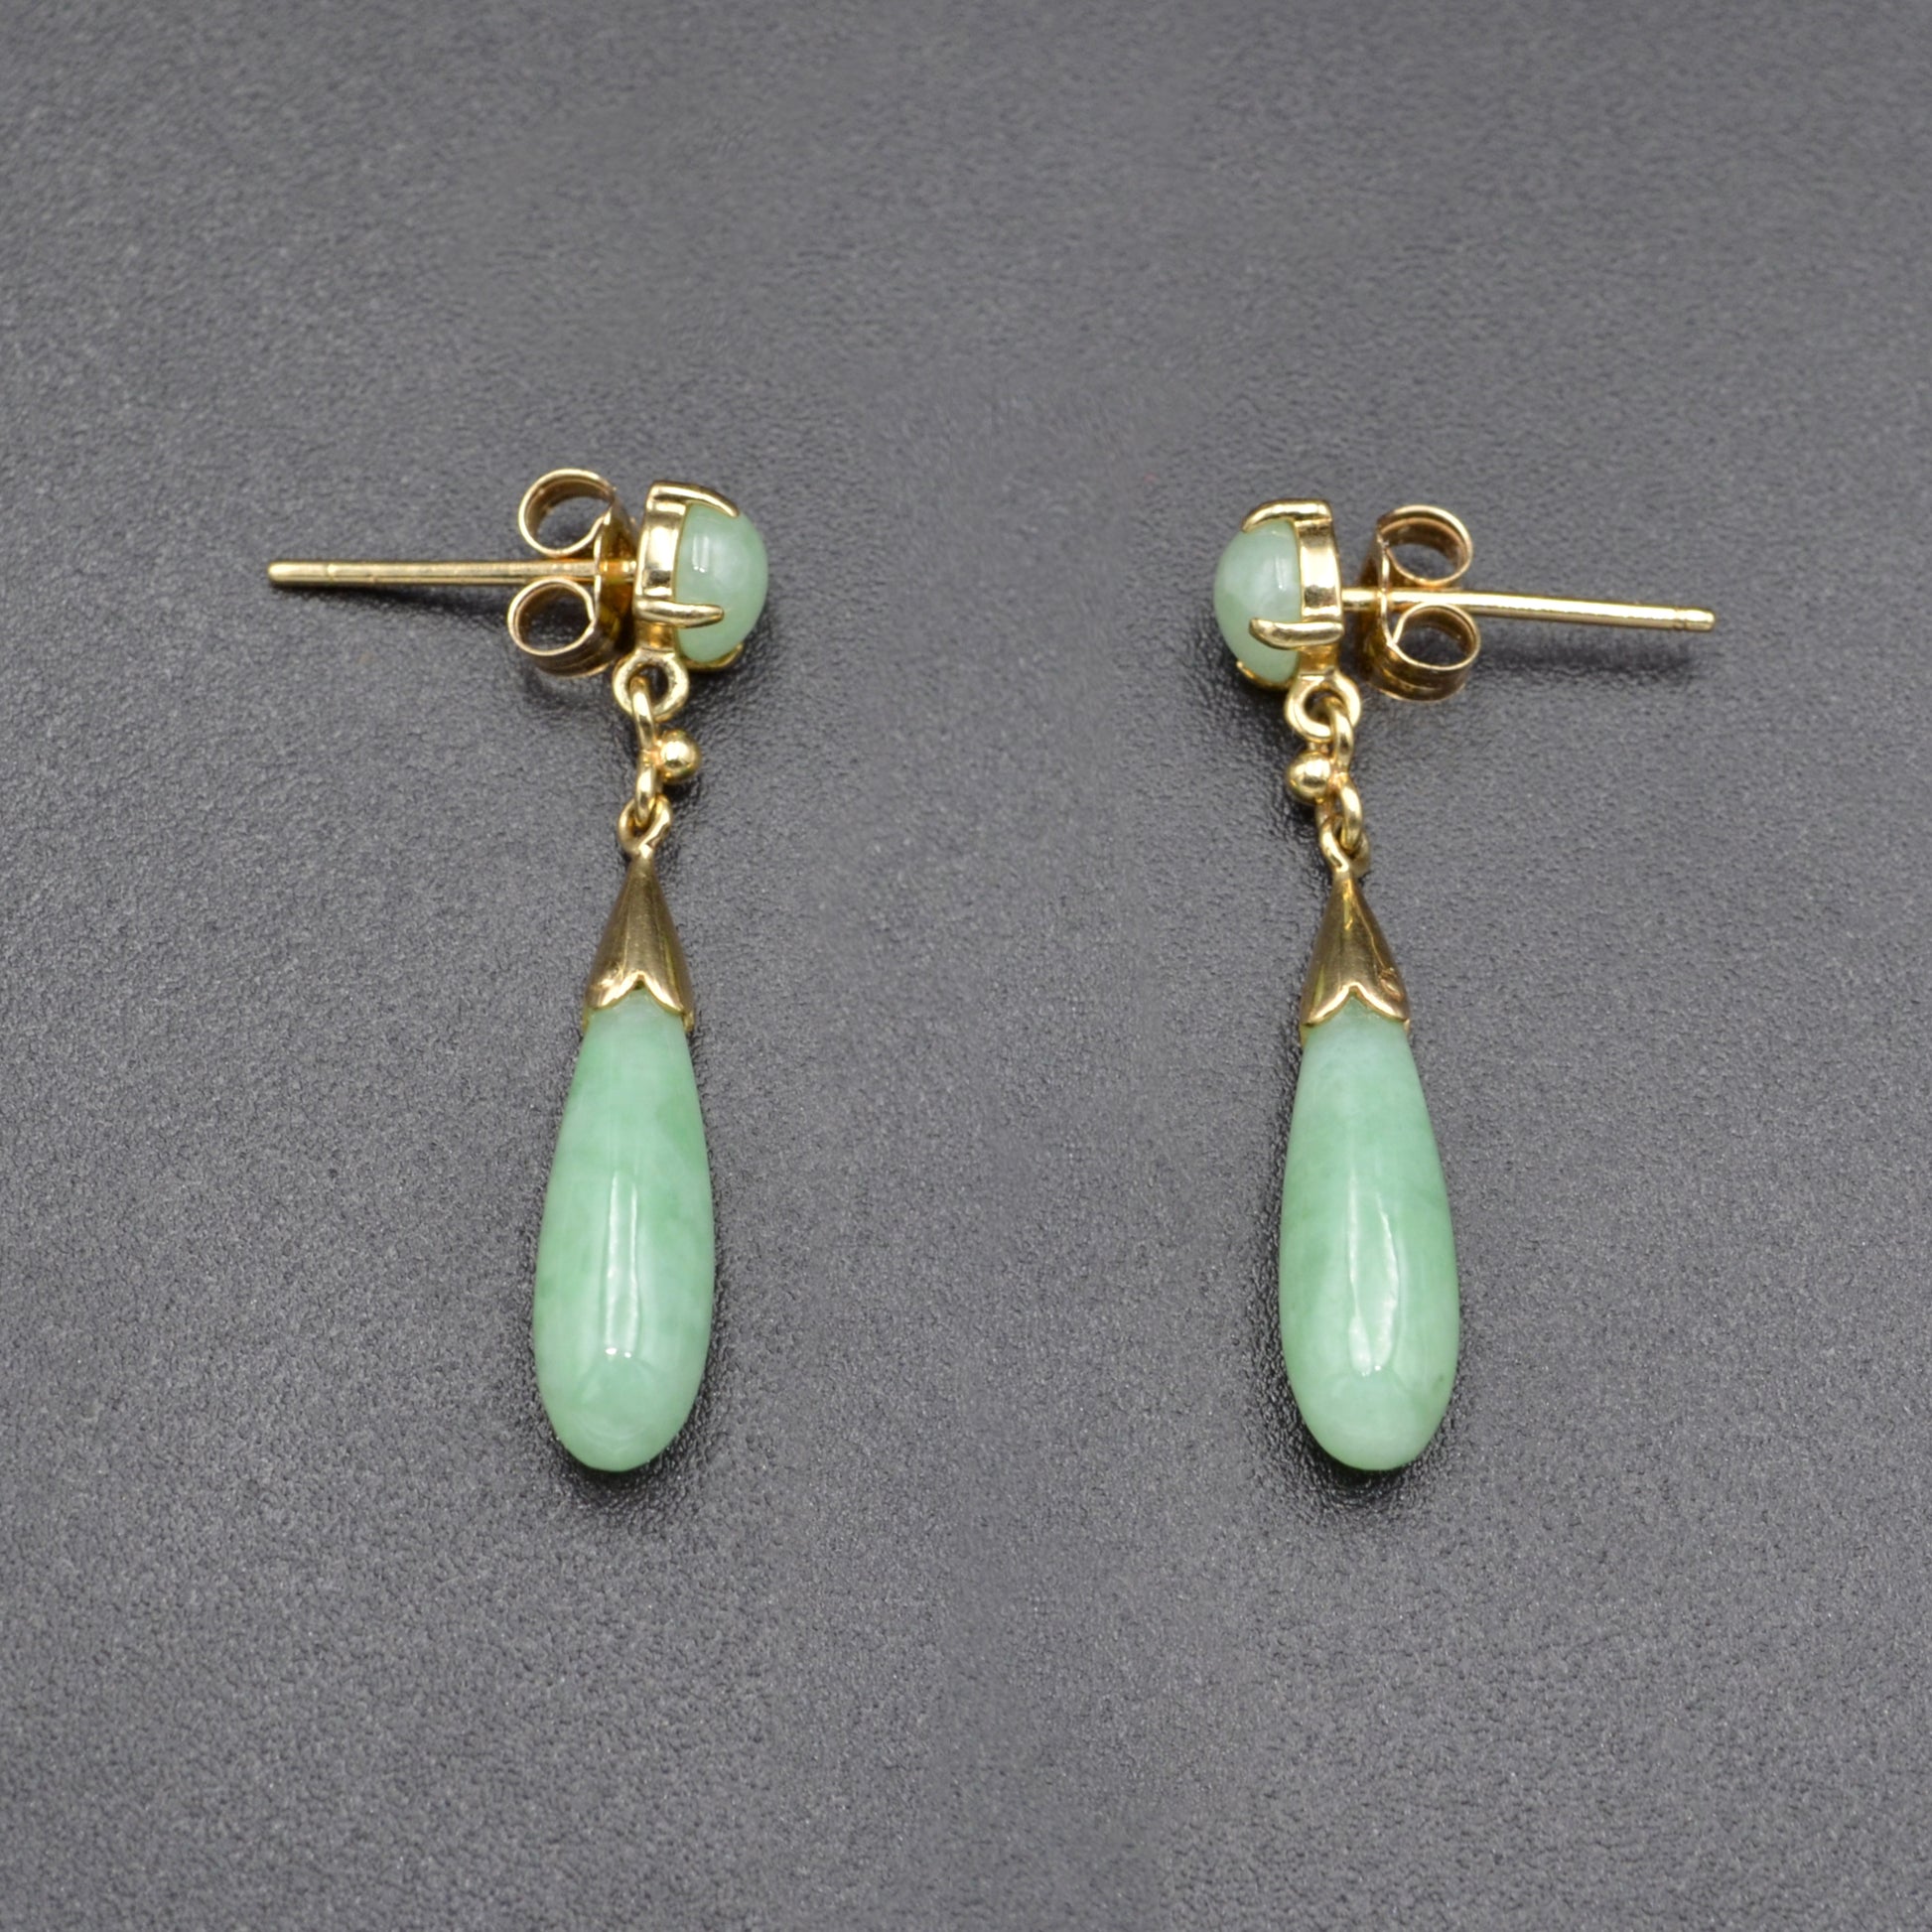 Vintage Light Green Jadeite Jade and 14k Gold Drop Earrings